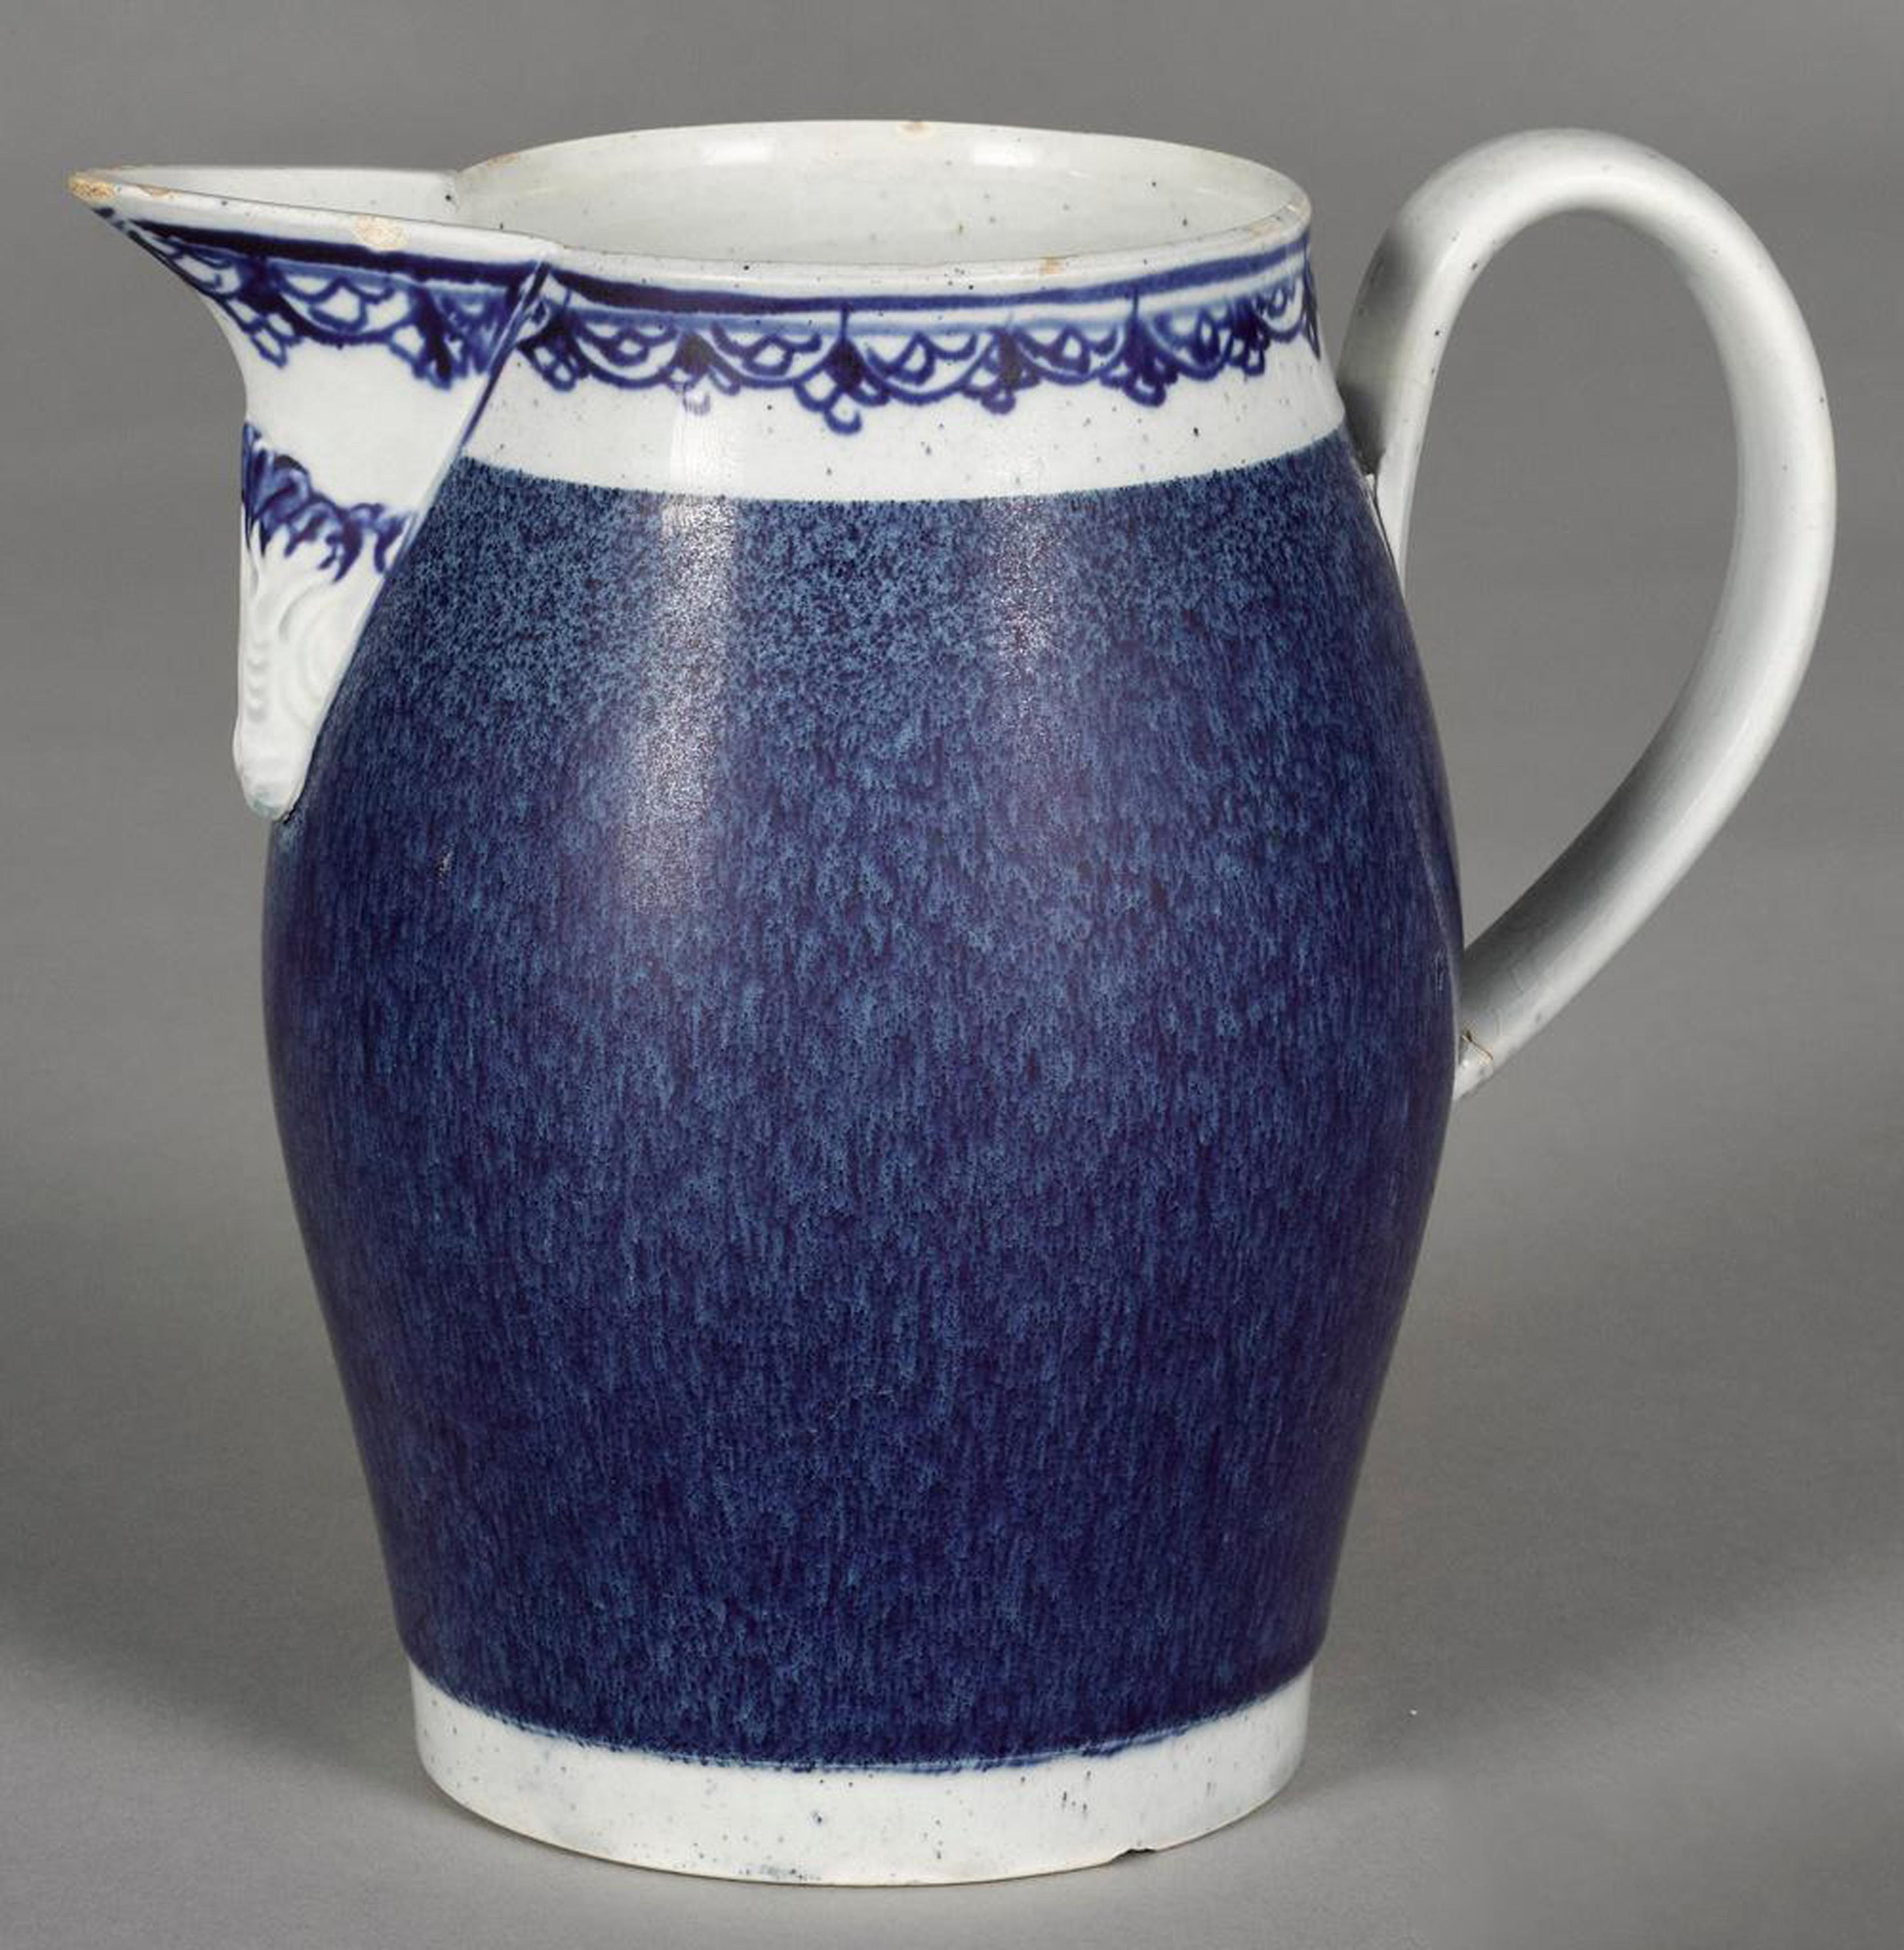 Pichet en poterie perlée anglaise à glaçure bleue mouchetée,
Circa 1780-1800

Pichet en céramique perlée avec un merveilleux fond bleu moucheté.

Dimensions : 6 pouces de haut x 6 1/2 pouces de large x 4 pouces de profondeur.
  